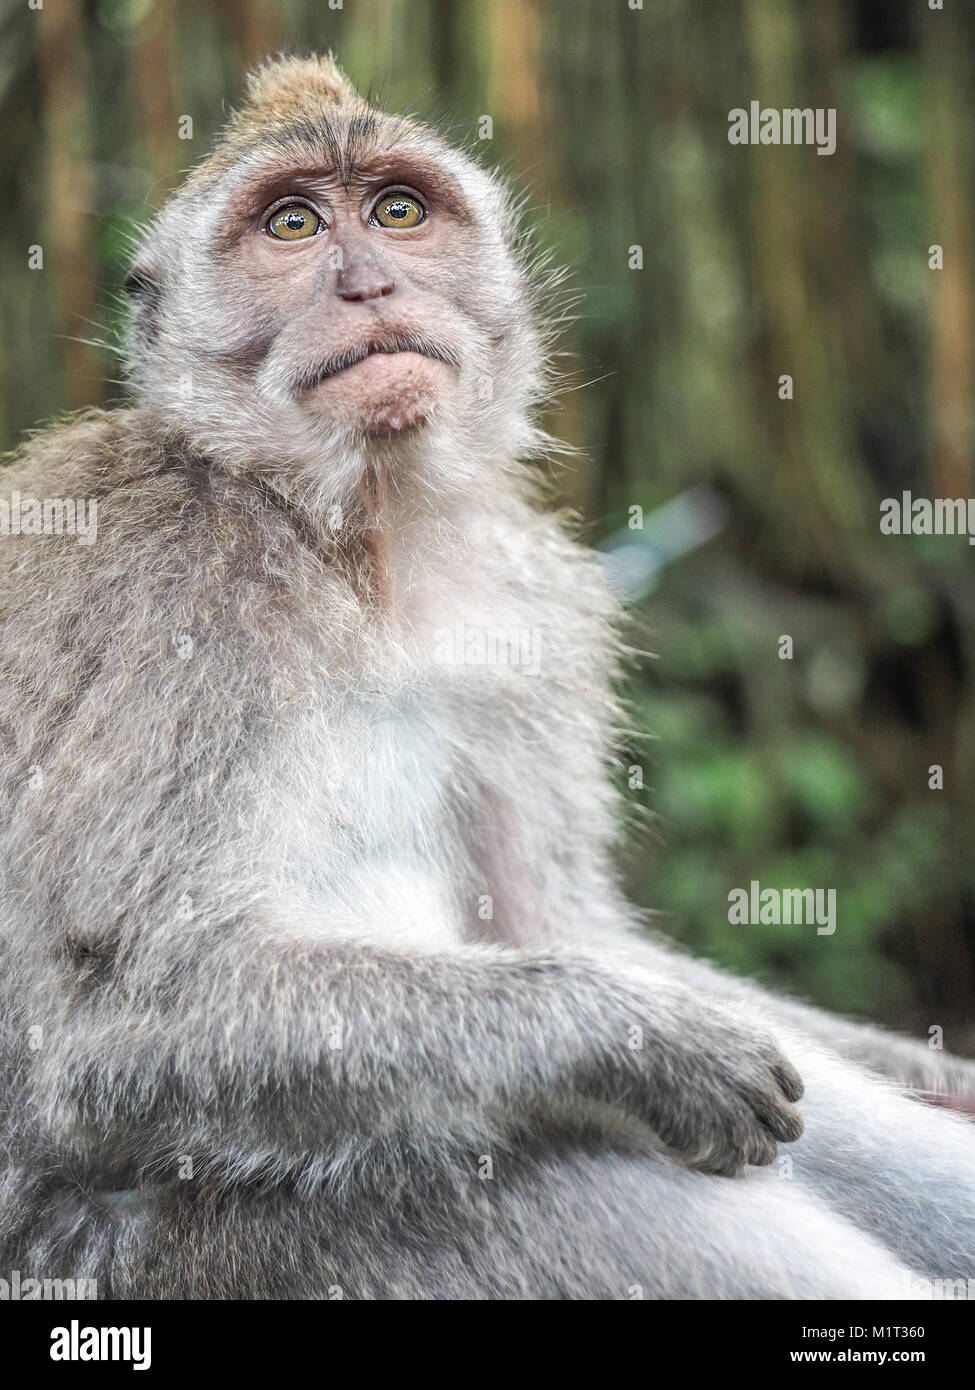 La expresión facial de monos. Retrato de sorprendido y consternado el macaco Foto de stock